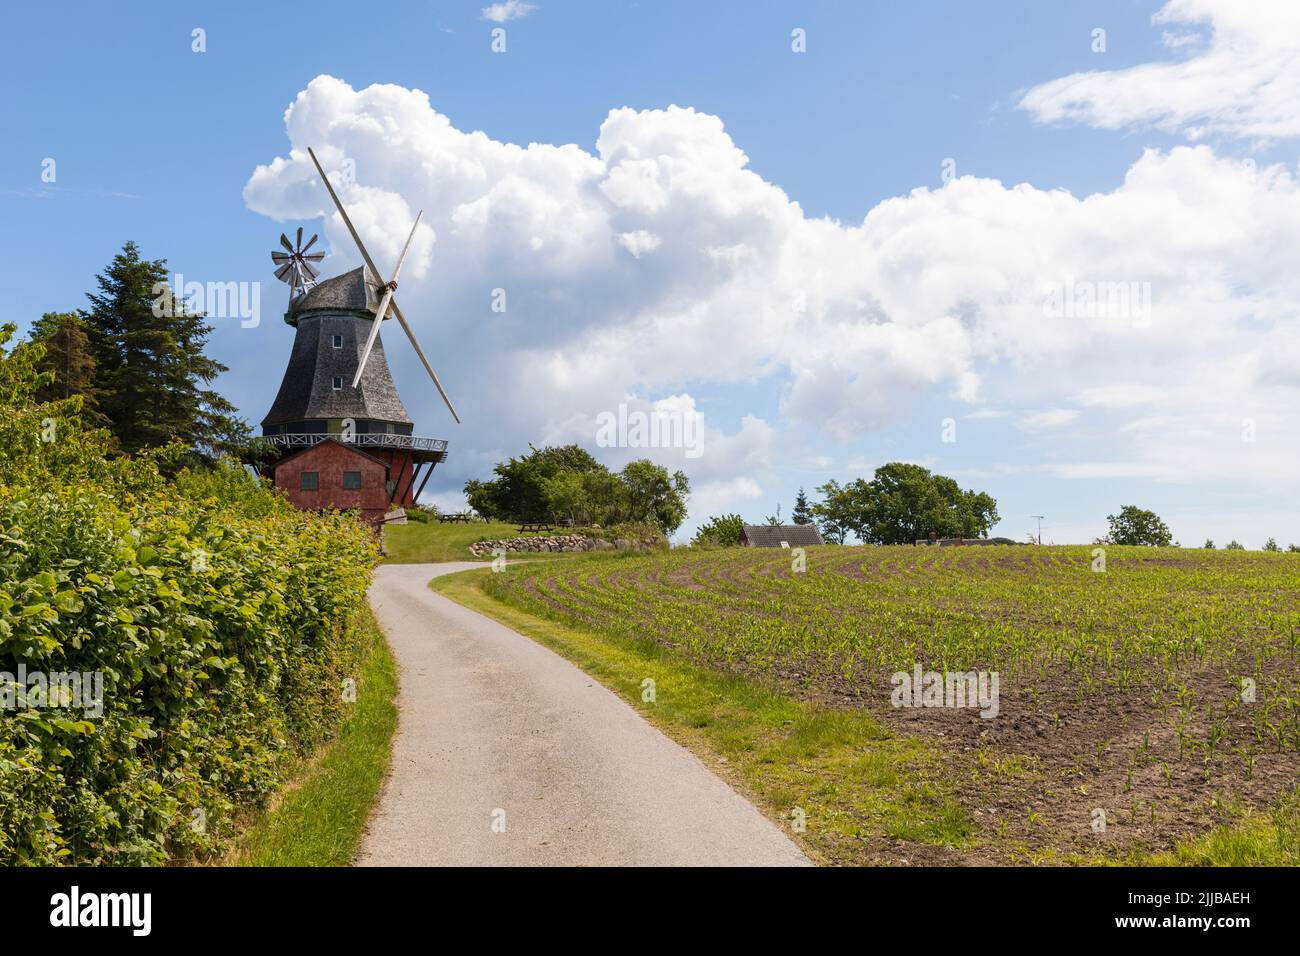 Lindelse Mølle, windmill at the village of Lindelse, langeland island, Denmark Stock Photo